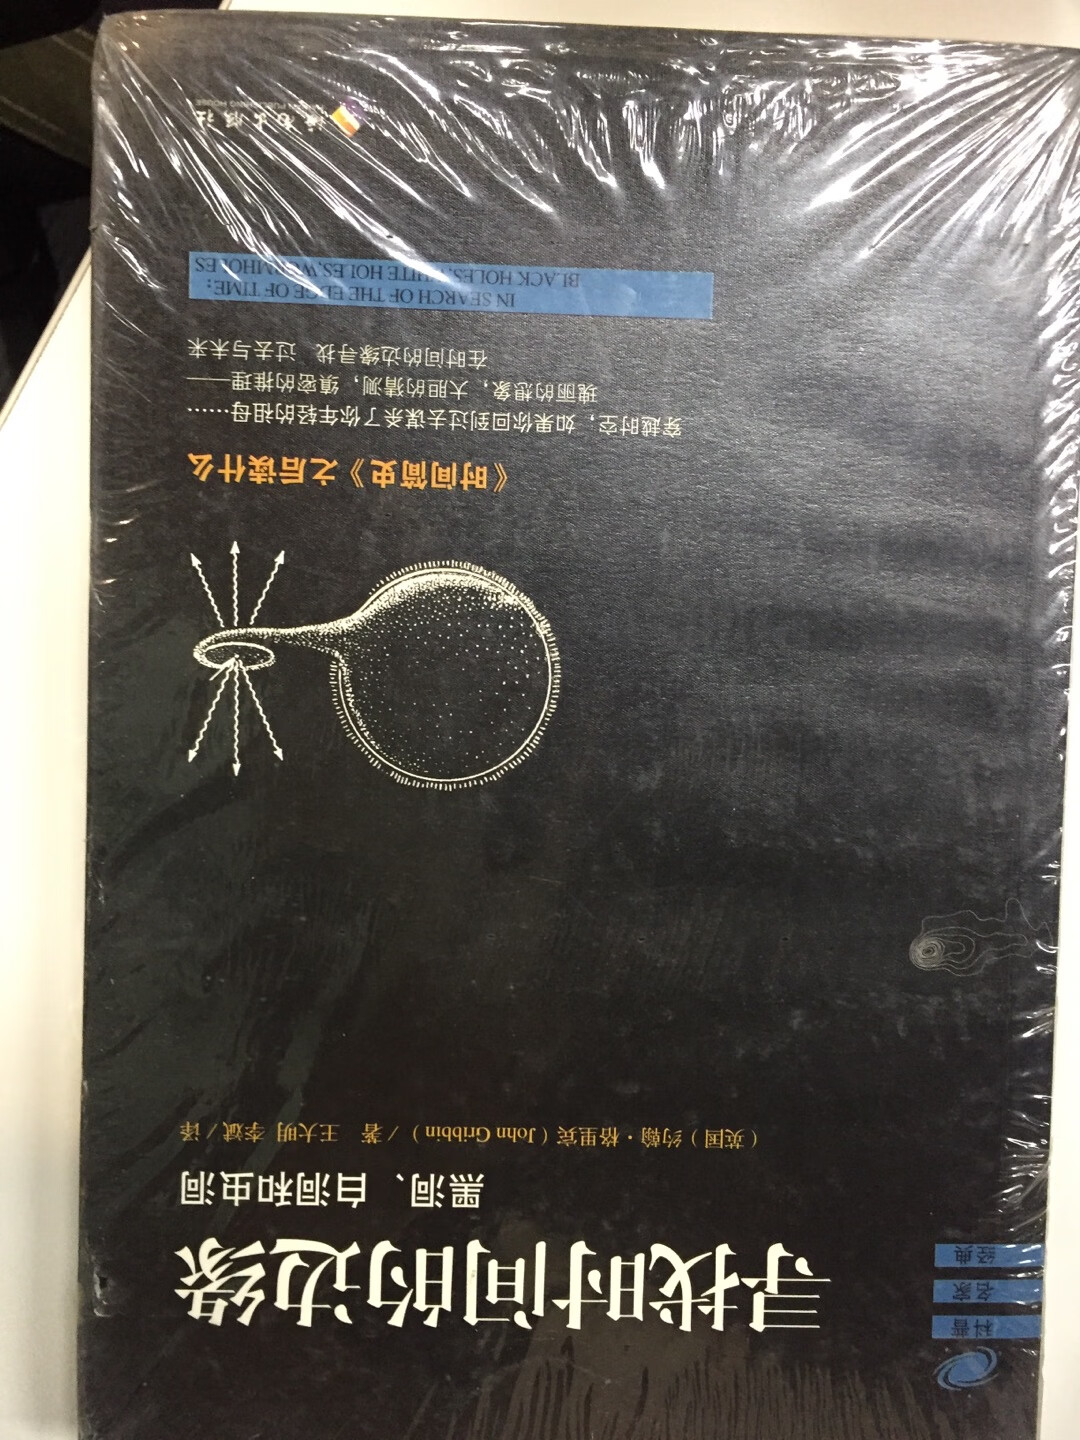 高一时买过一本约翰格里宾的《大宇宙百科全书》被同学戏谑“读完就能拿理论物理的学士学位了。十五年后，我依然在看约翰格里宾。黑洞白洞虫洞 迷人的话题 相信书不会让我失望